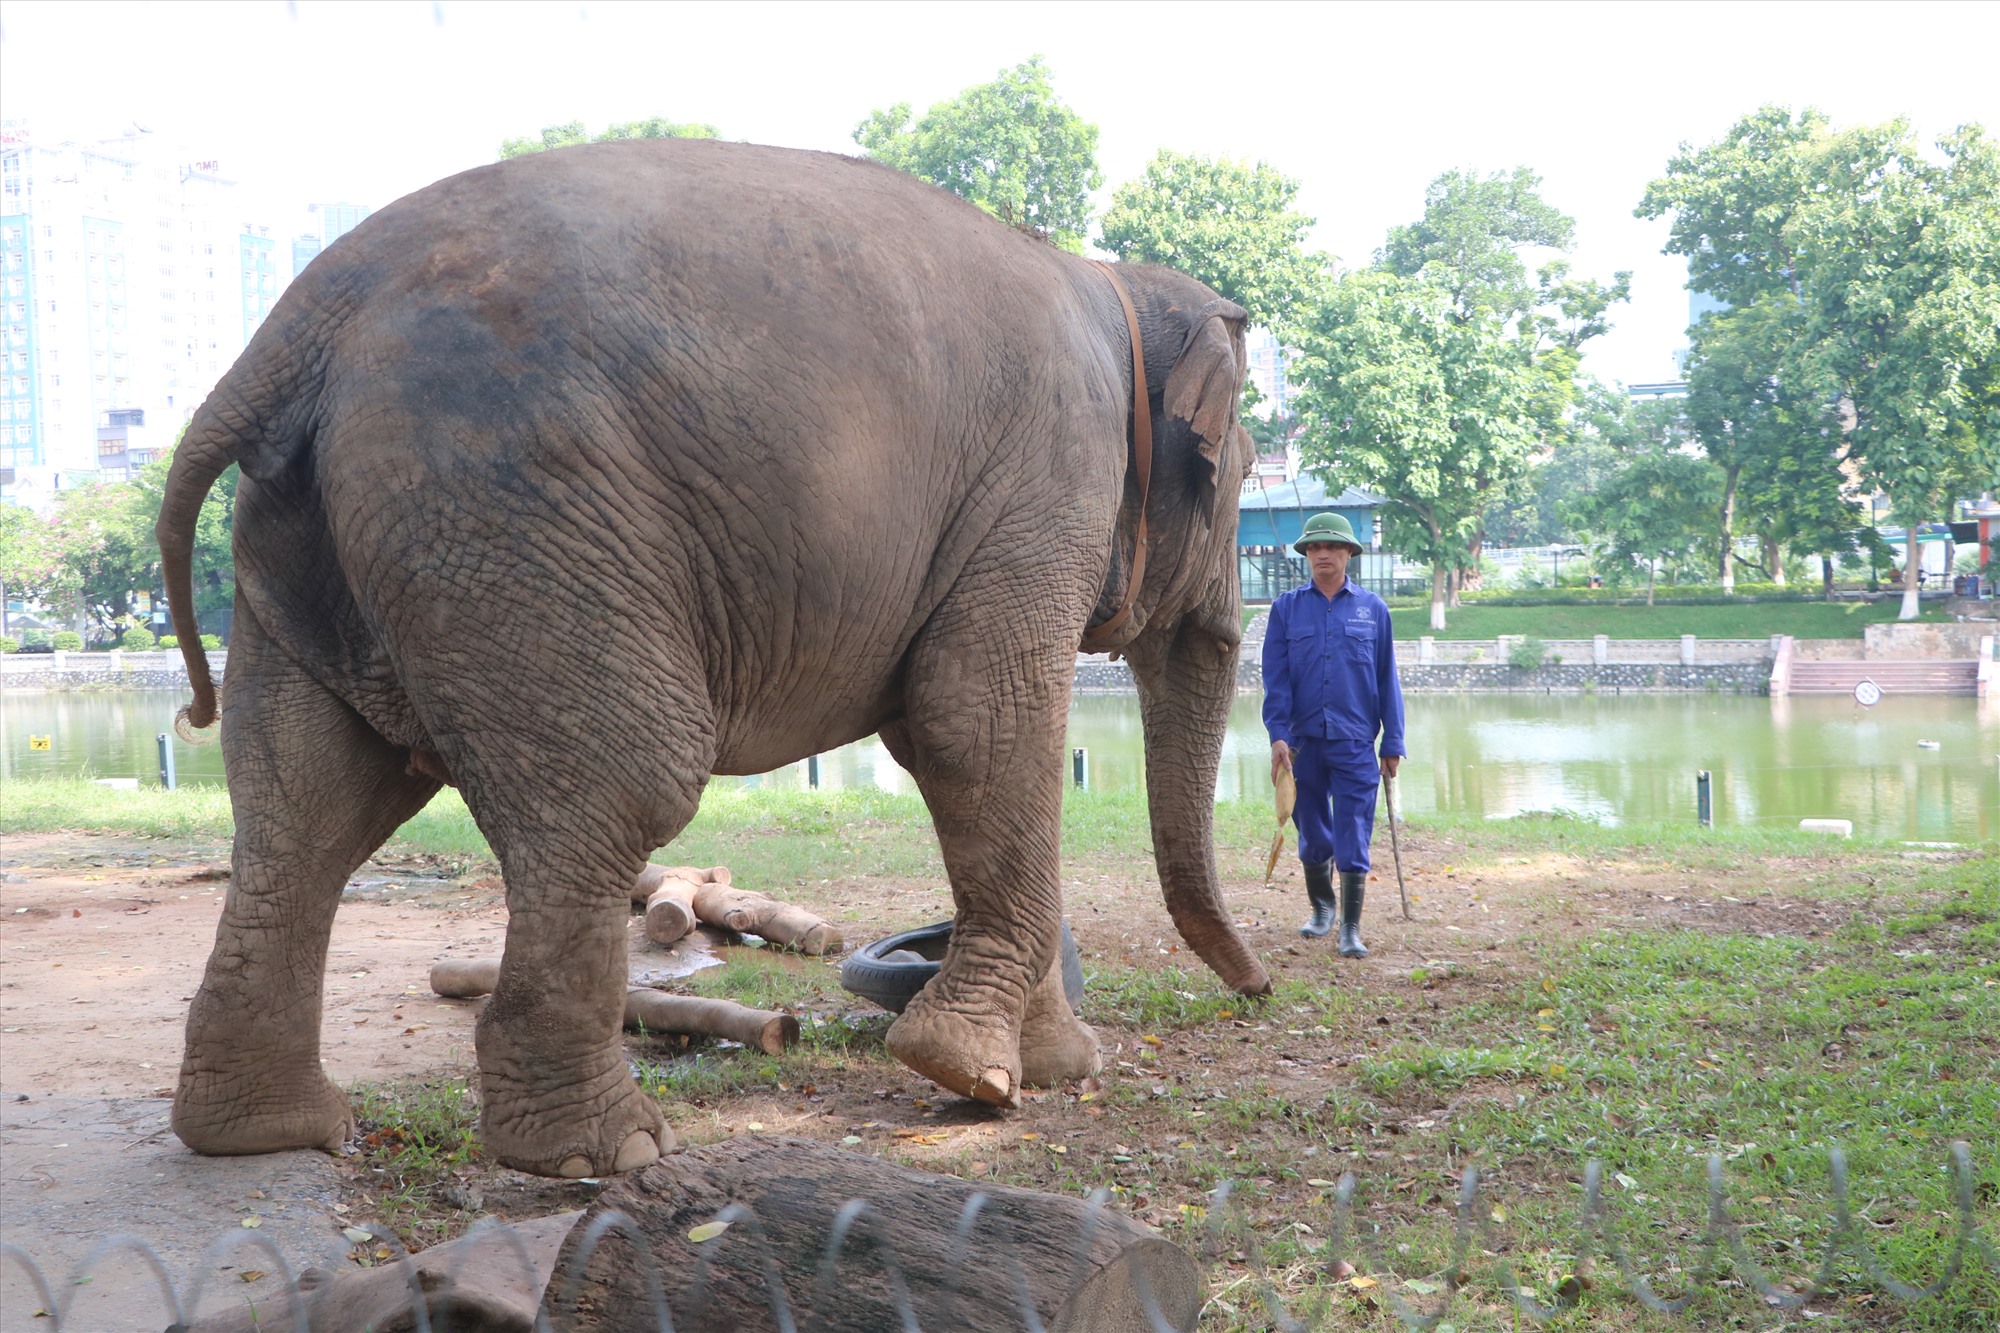 Ngoài việc bị tháo xích chân, nhiều người dân, du khách thắc mắc rằng,chế độ chăm sóc sức khỏe, ăn uống từ phía Vườn thú Hà Nội với hai cá thể voi này như thế nào, liệu có đảm bảo hay không?